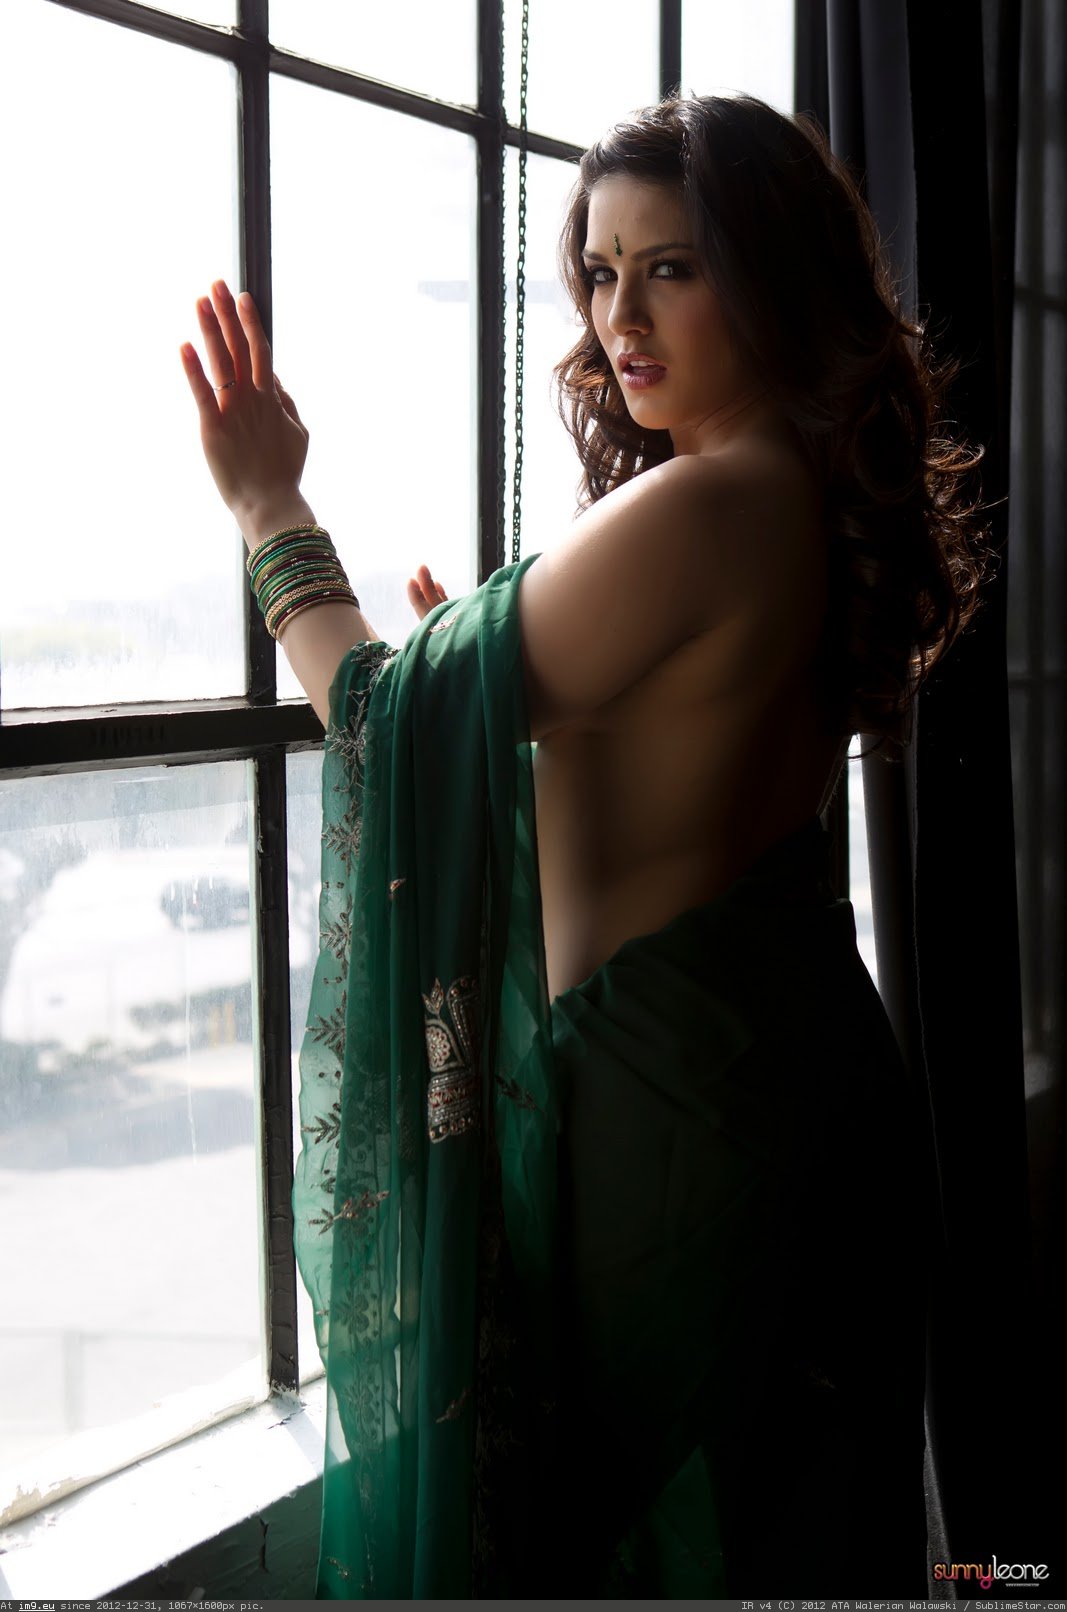 anthony ferrell share sunny leone saree porn photos